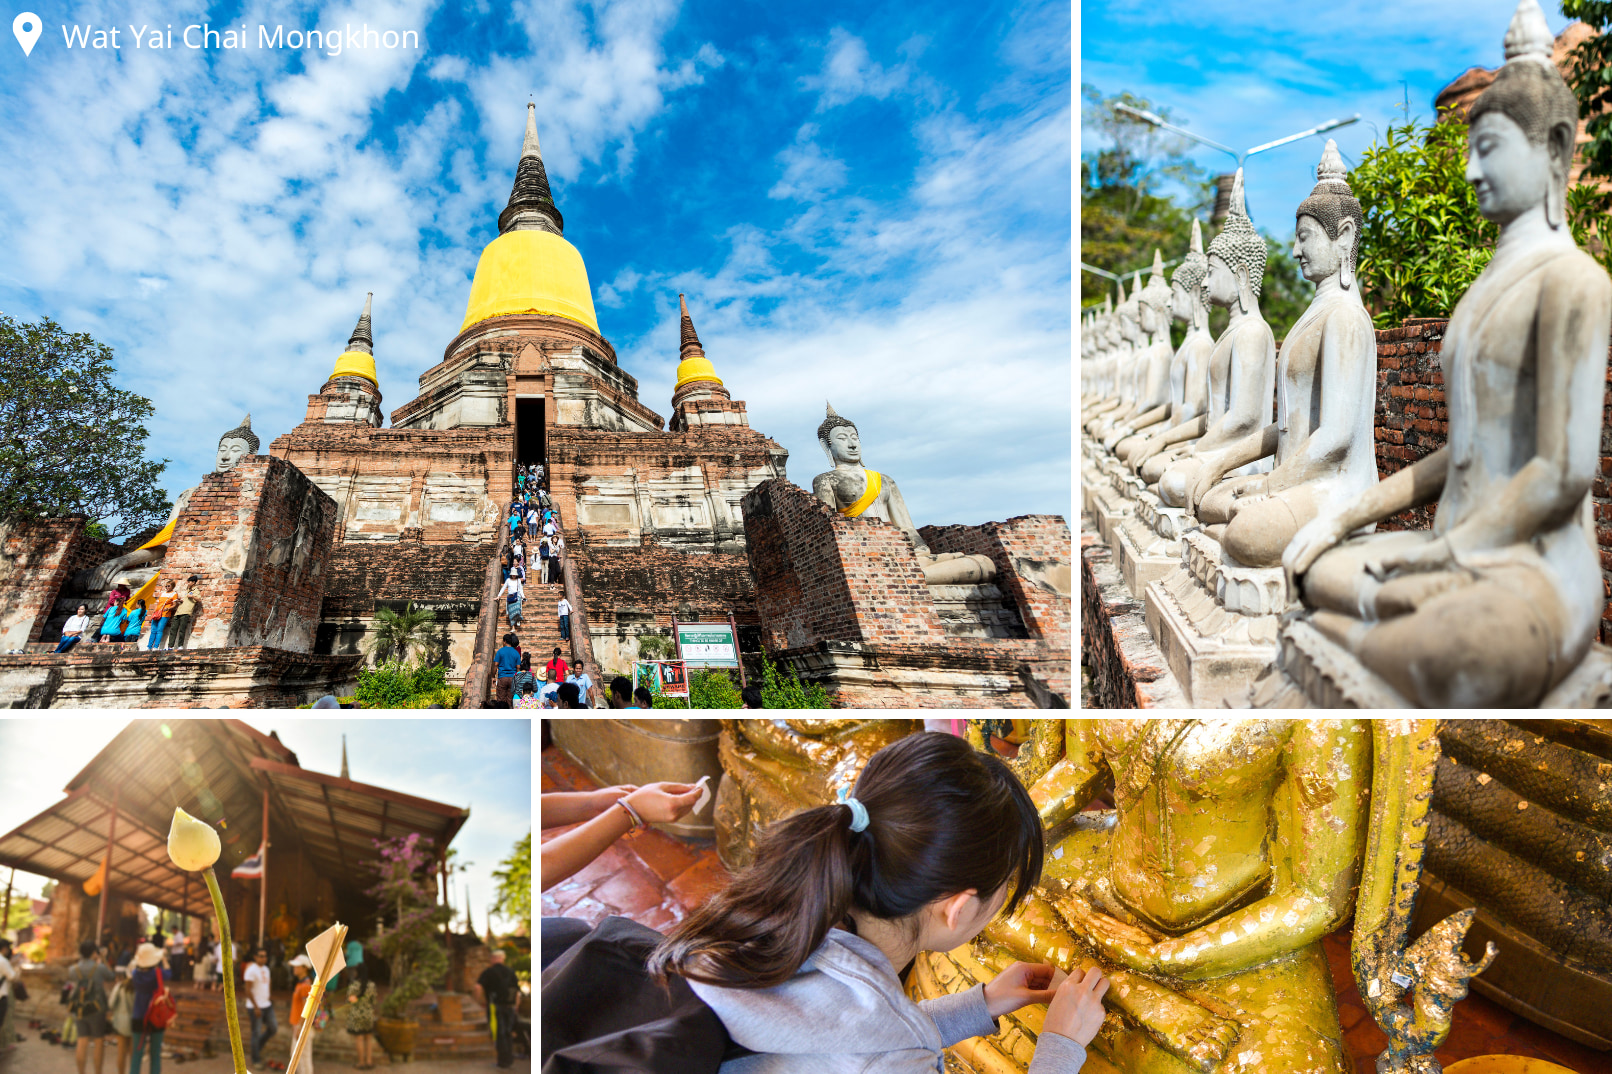 保留完整的崖差蒙空寺，14世紀為紀念戰勝緬甸軍隊而修建，以戶外臥佛跟寶塔最為知名